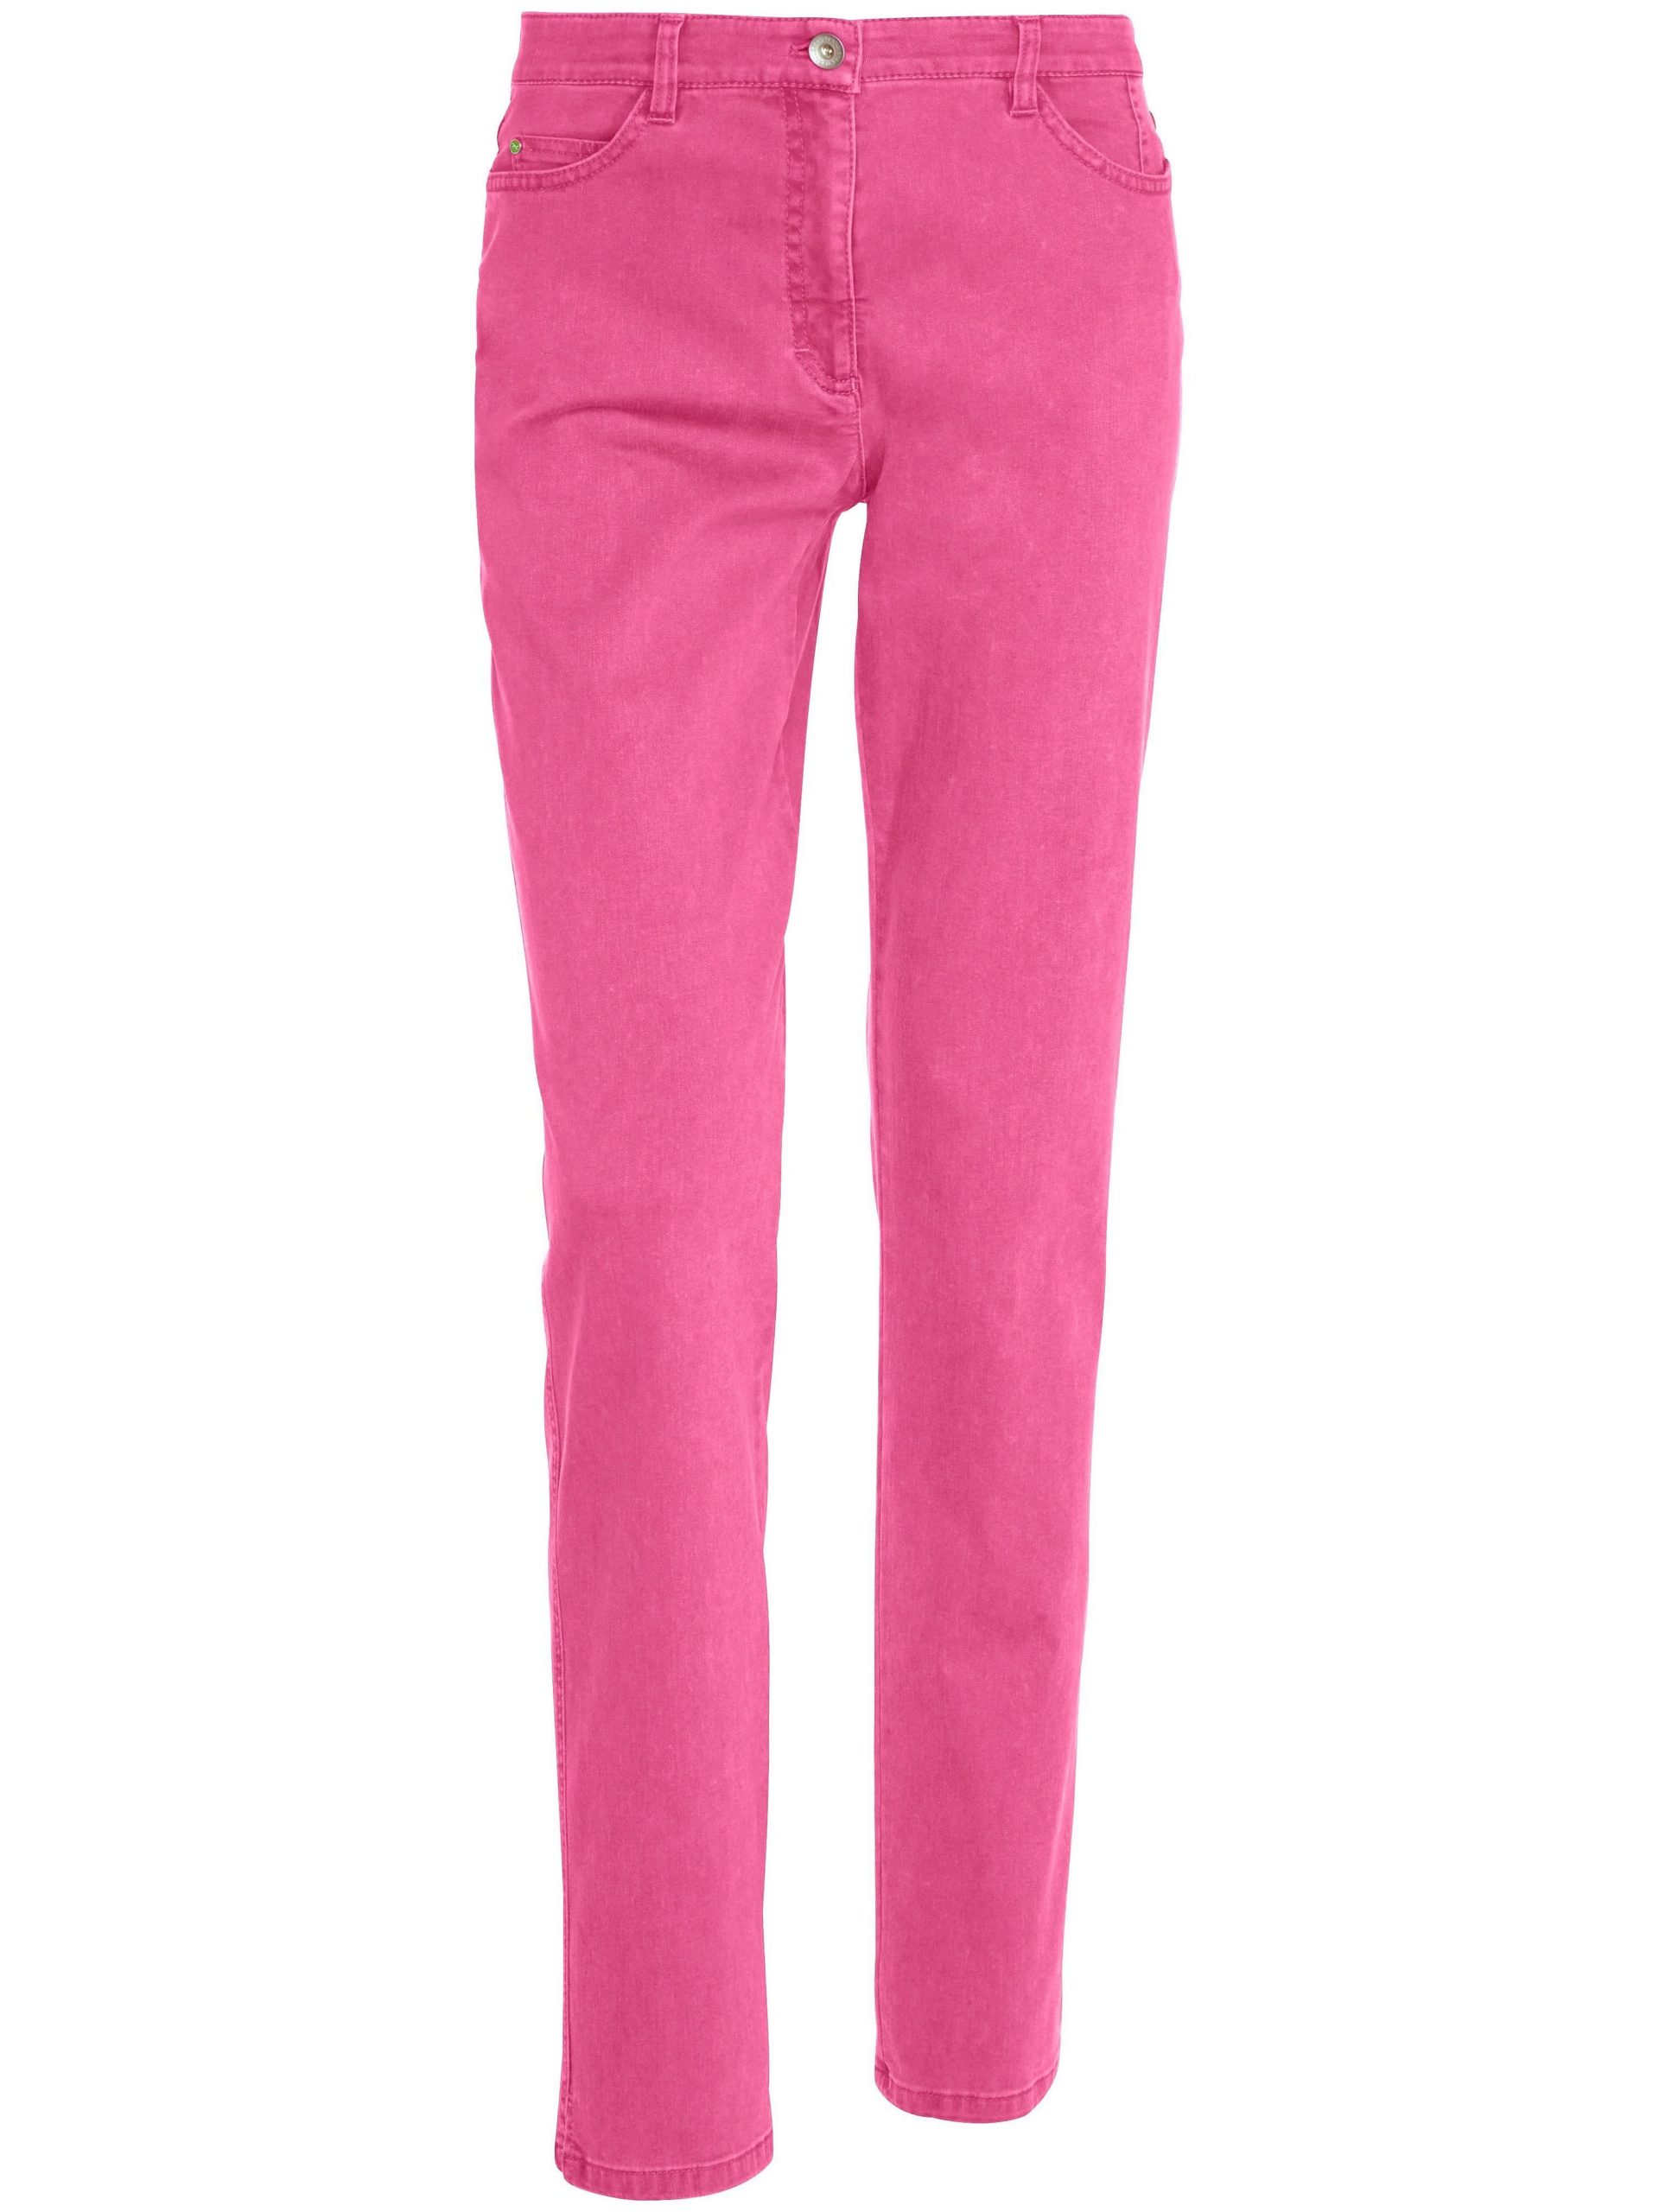 Feminine fit jeans, model Nicola Van Brax Feel Good roze Kopen